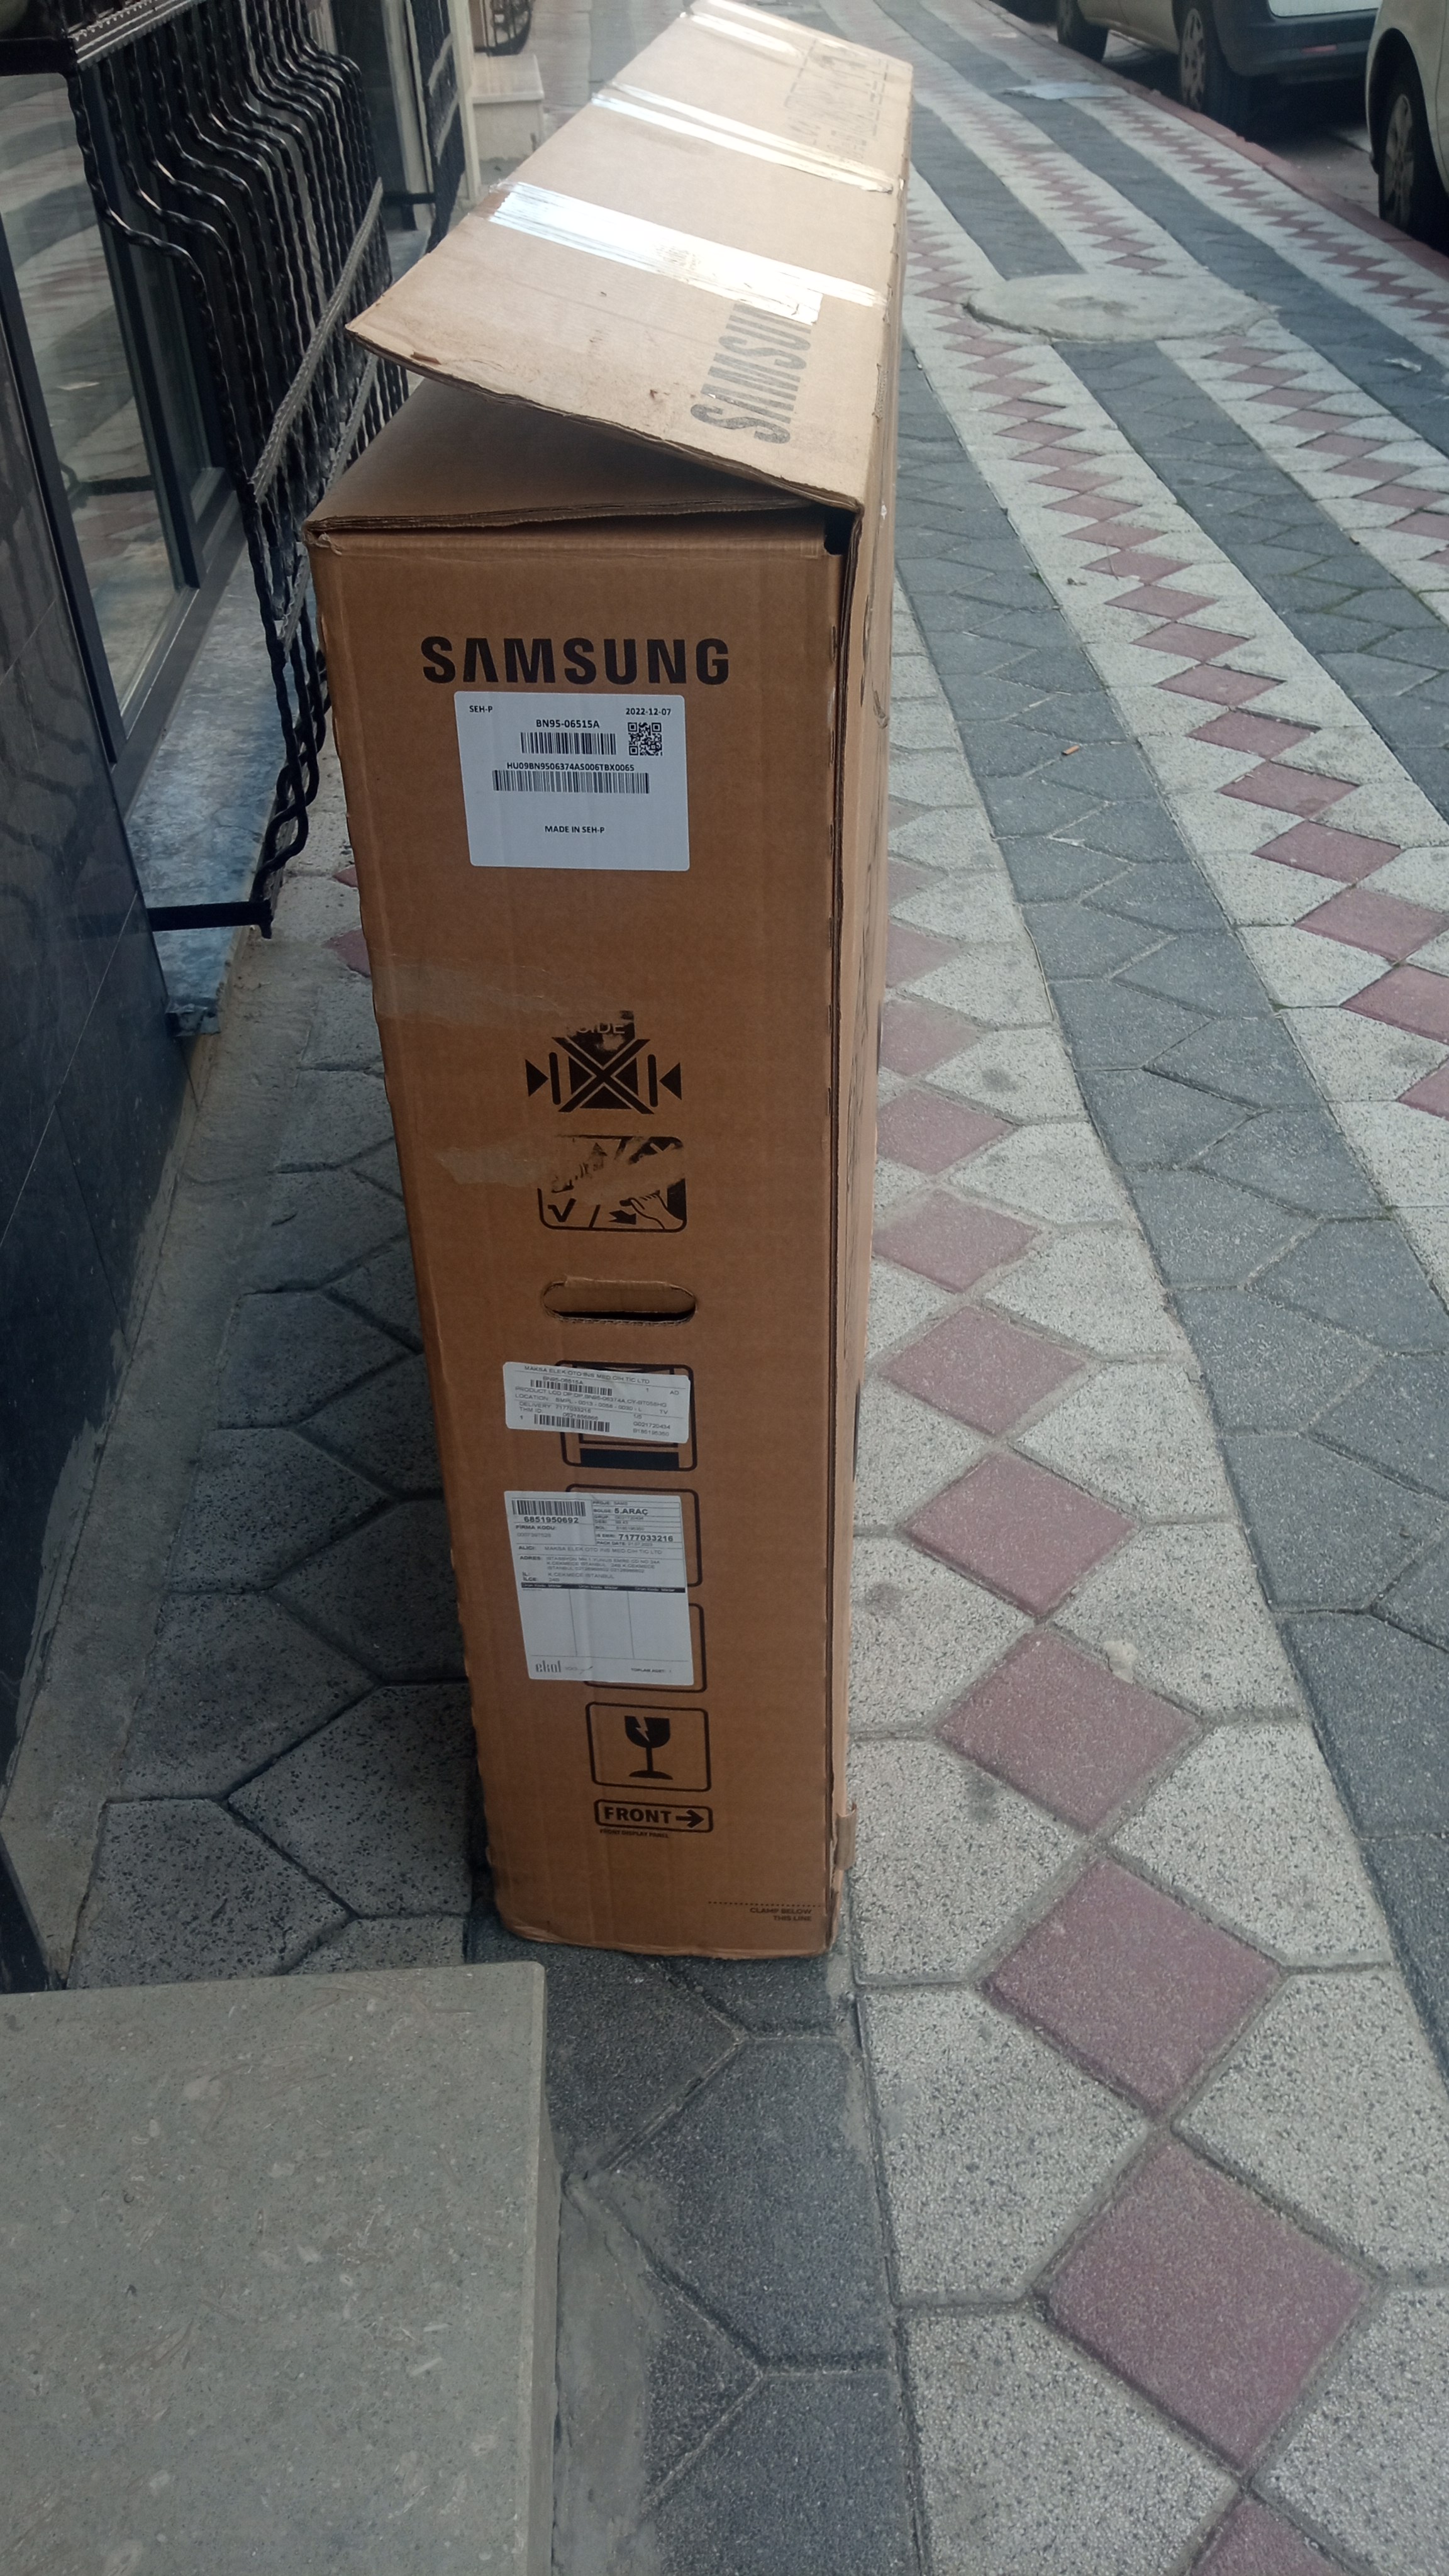 Adrese Teslim Orjinal Köpüklü 58 inç Tv Taşıma Kutusu Samsung |  DonanımHaber Forum